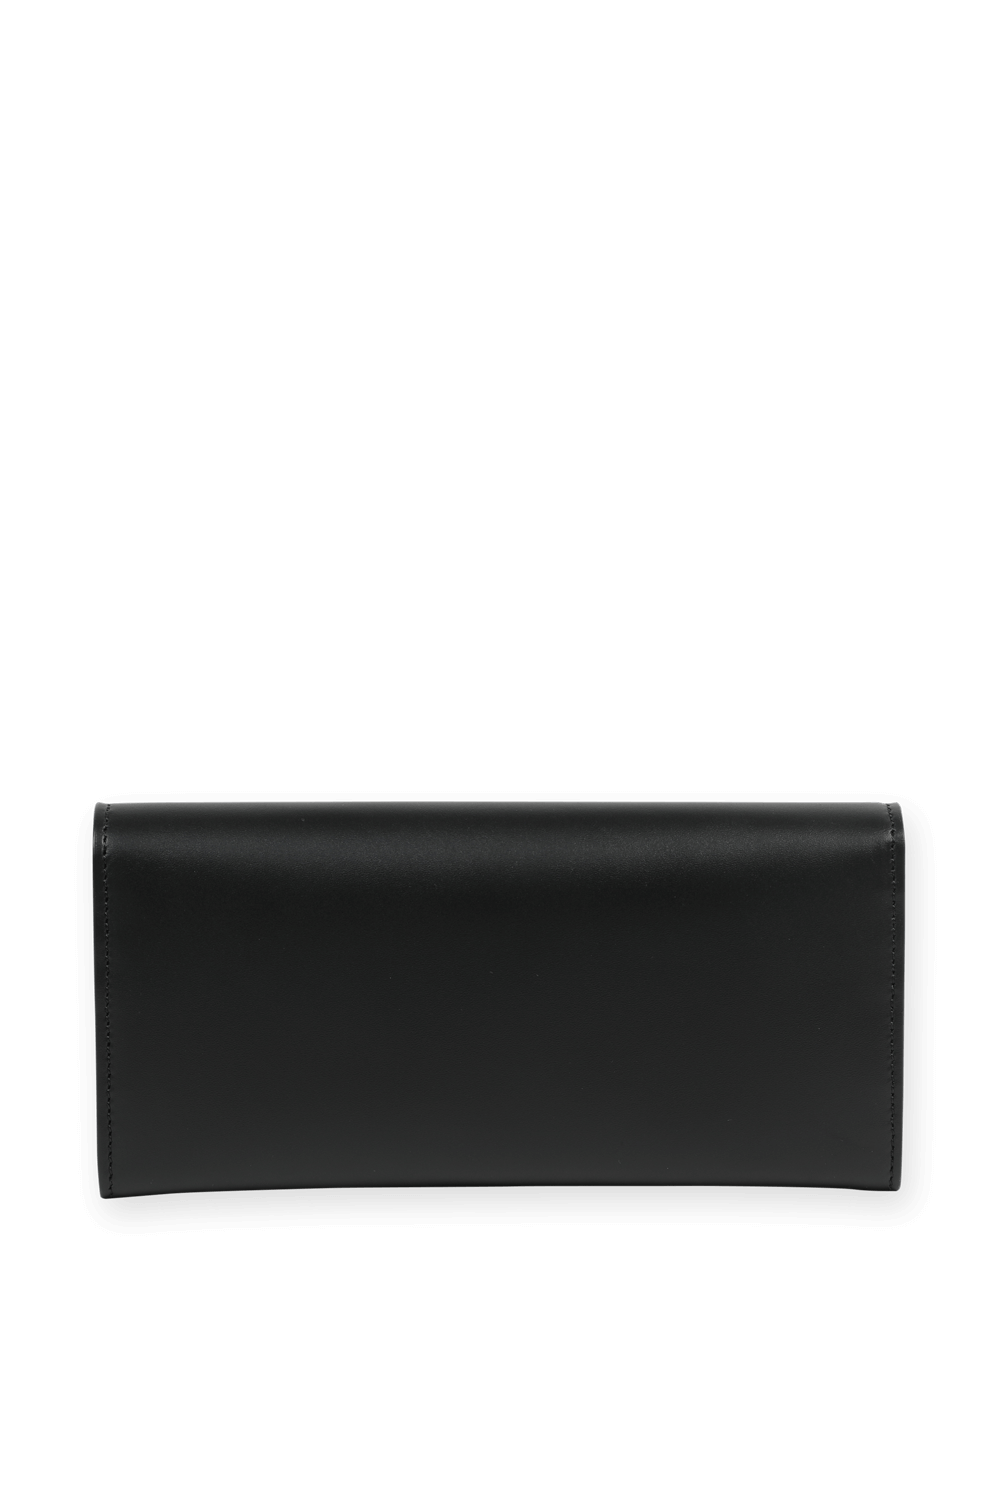 King Wallet in Black Leather FENDI